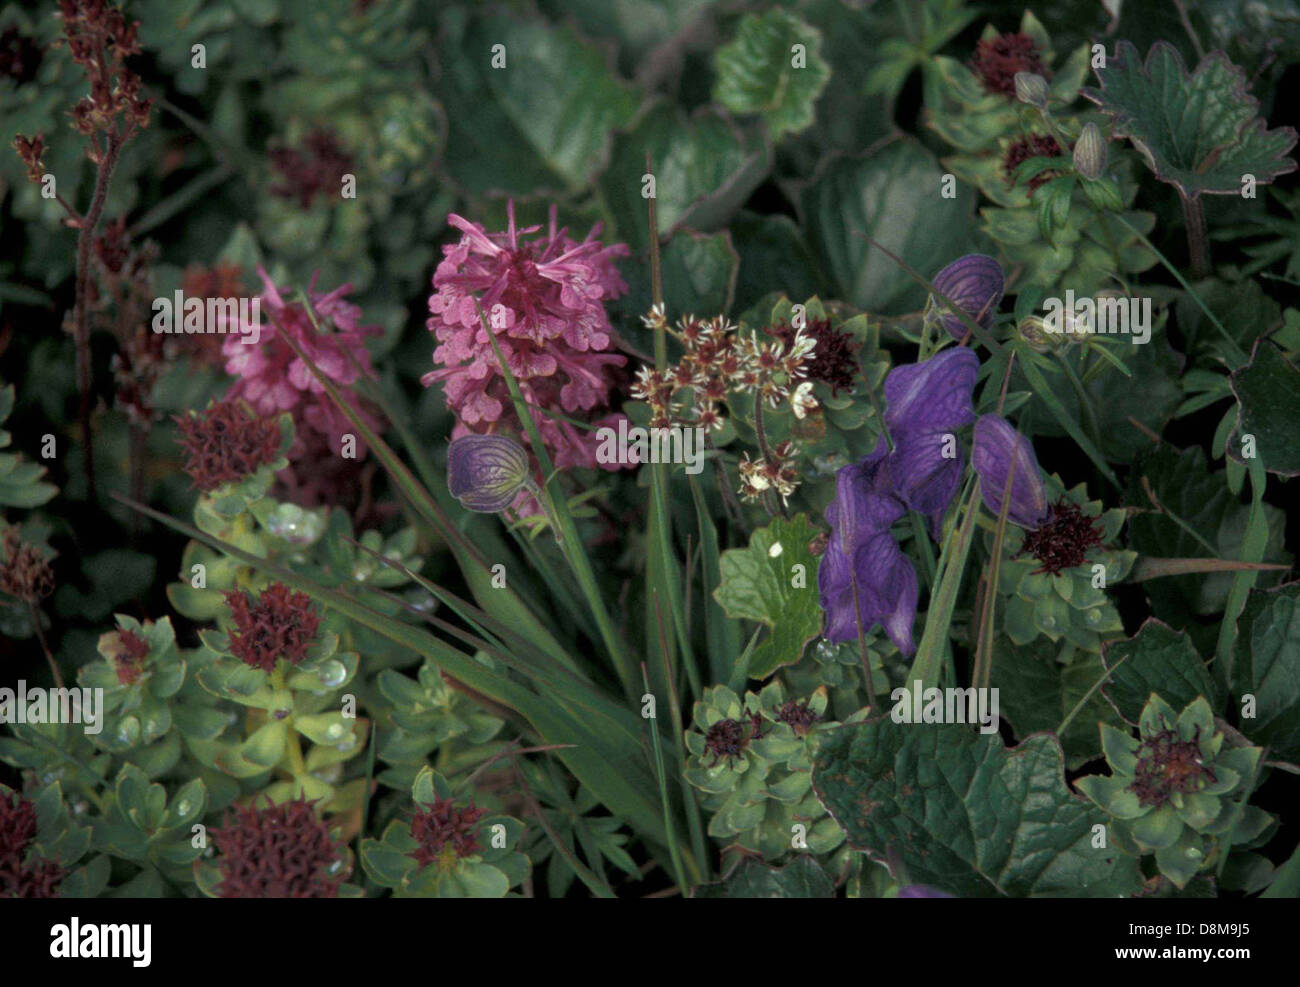 Monkshood flower aconitum delphinifolium and sedum rosea. Stock Photo